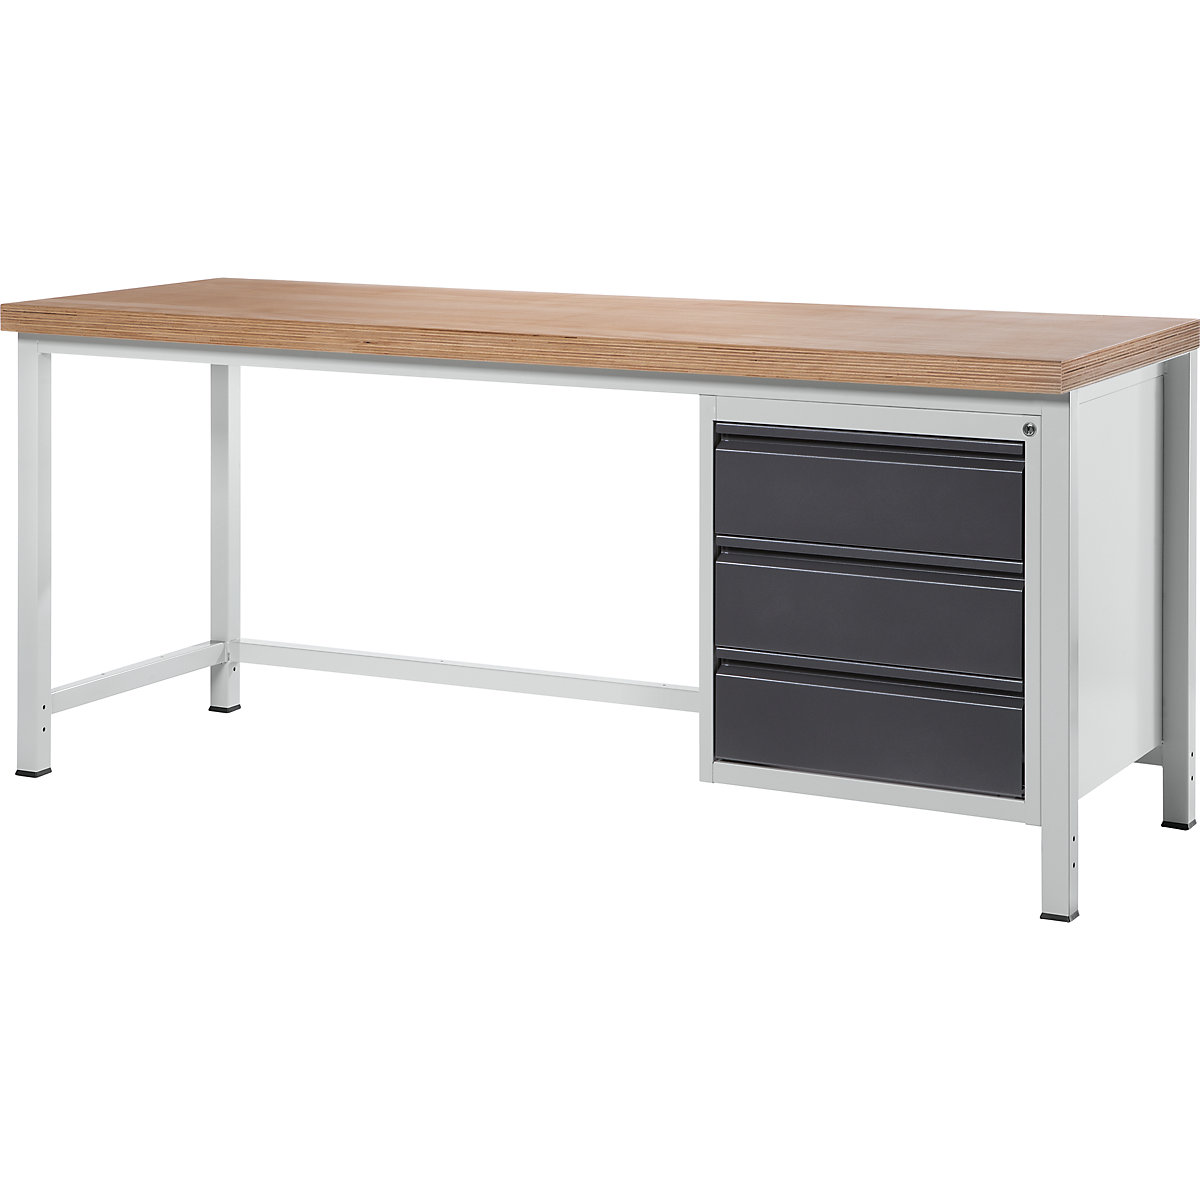 Stół warsztatowy, konstrukcja ramowa – RAU, 3 szuflady, szer. płyty 2000 mm, antracytowy-metallic-8